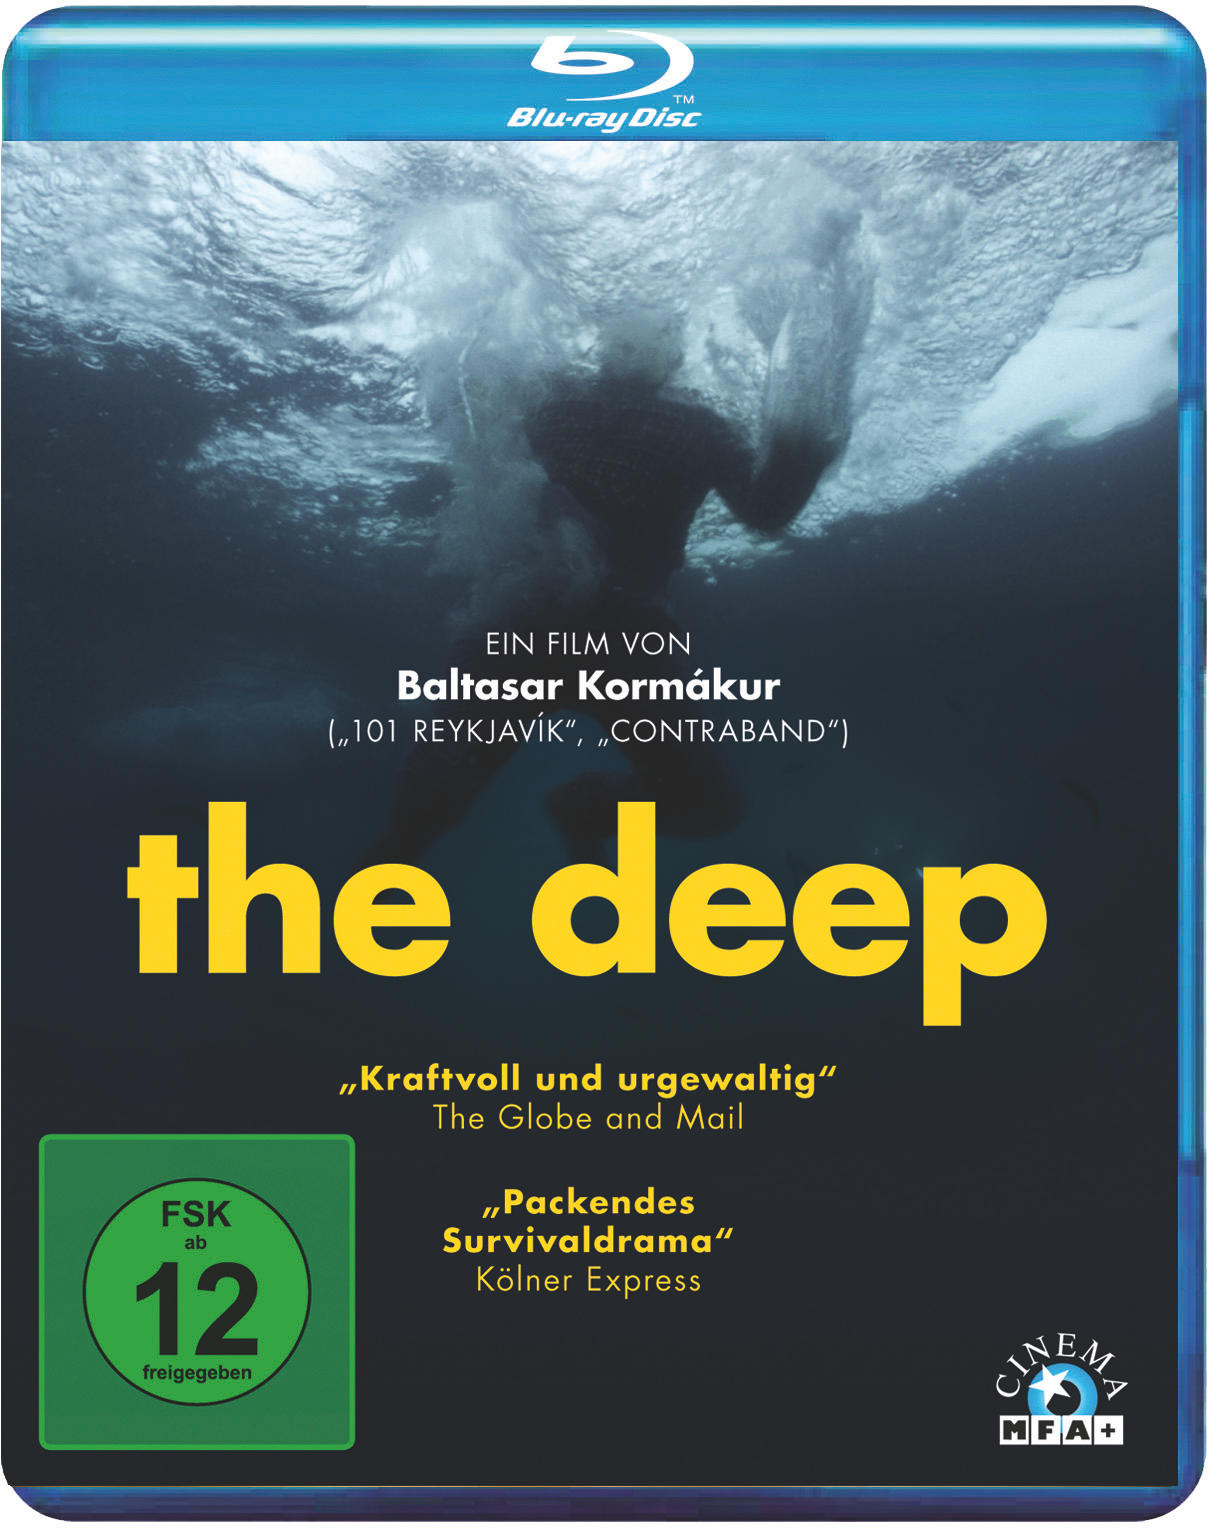 The Blu-ray Deep